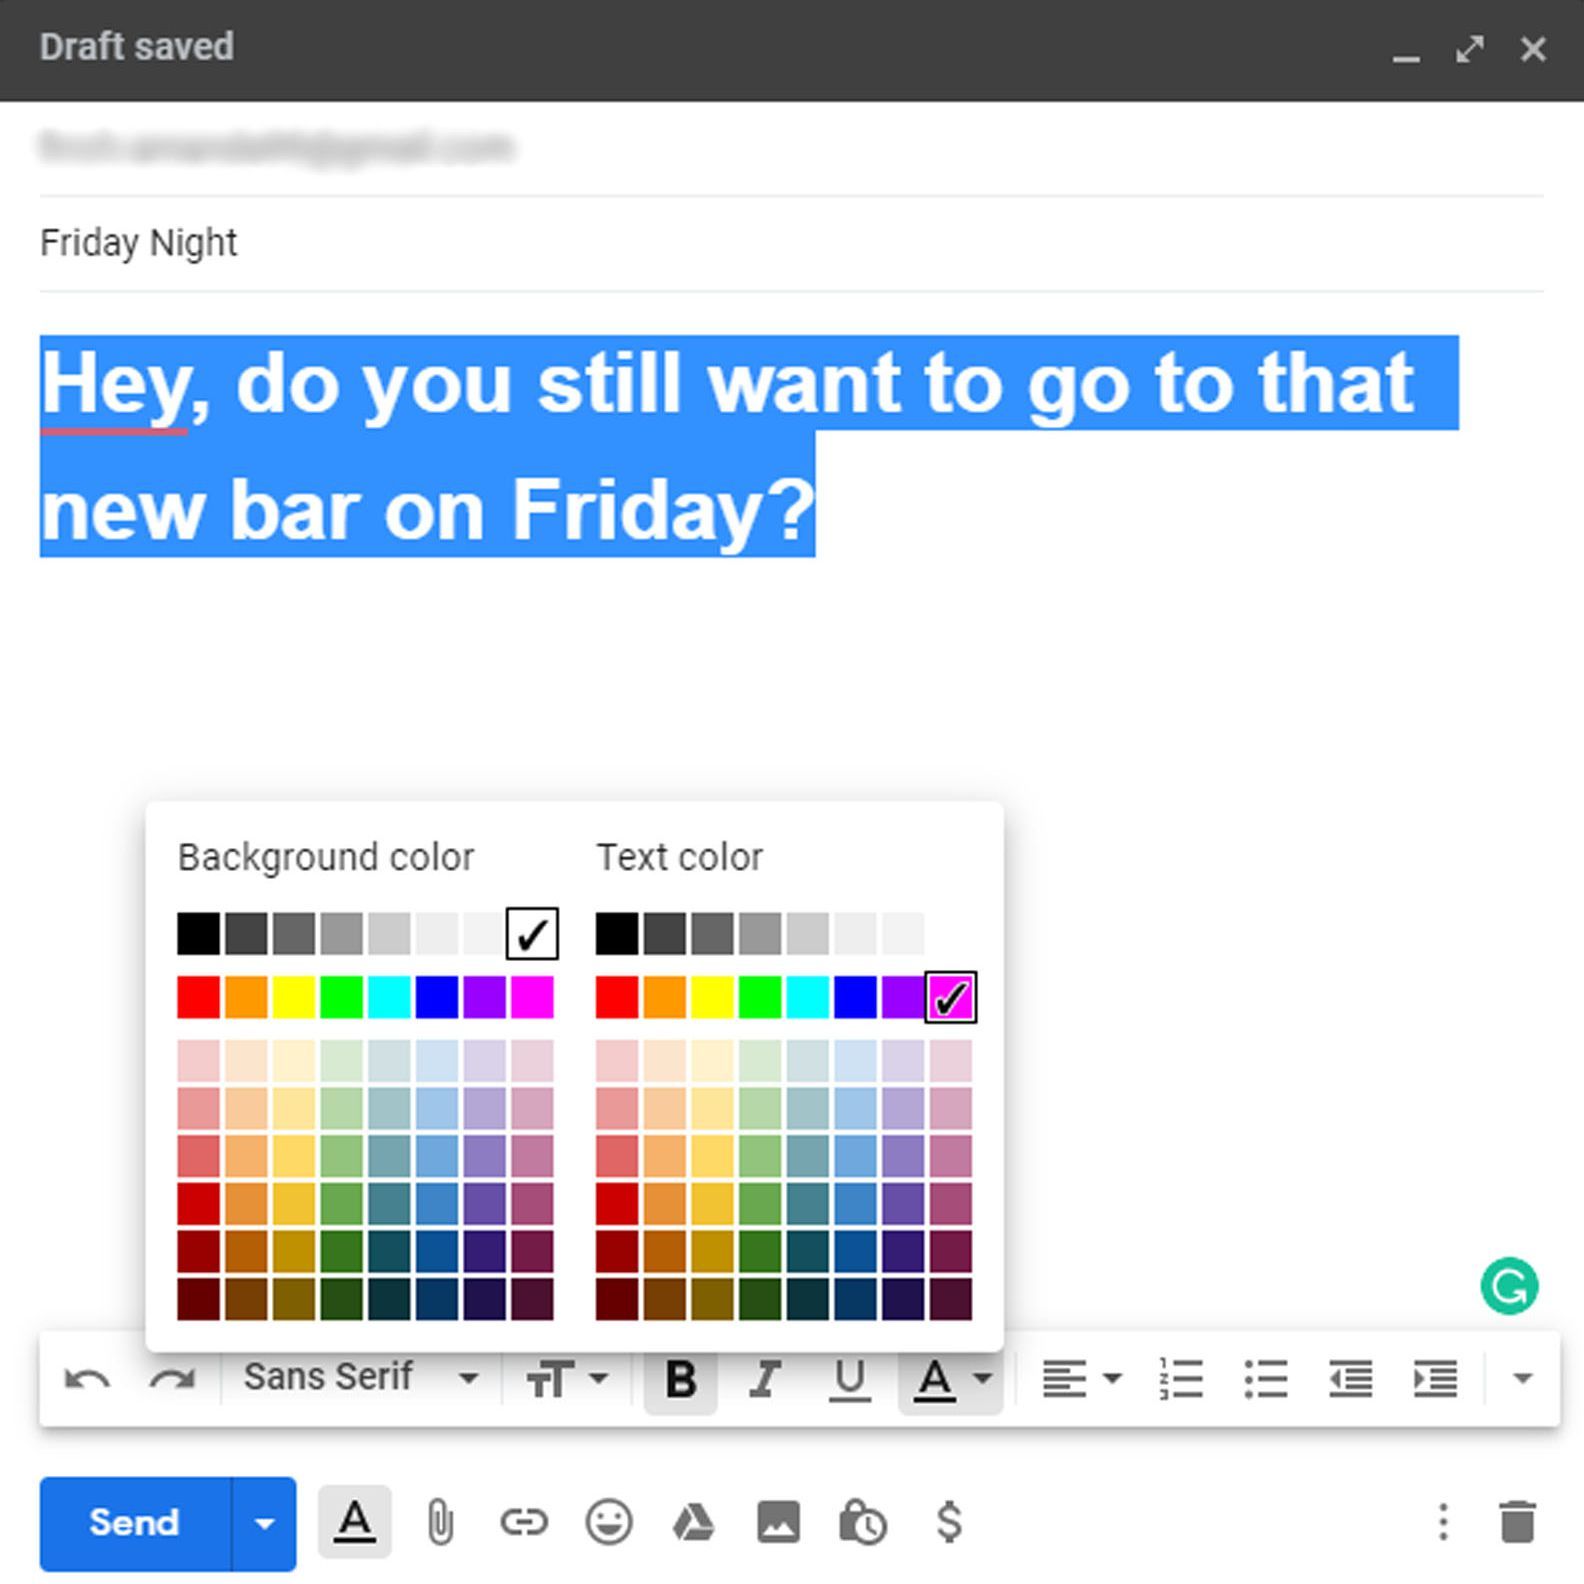 Gmail с открытым окном композиции, показывающий большой размер шрифта и цвет